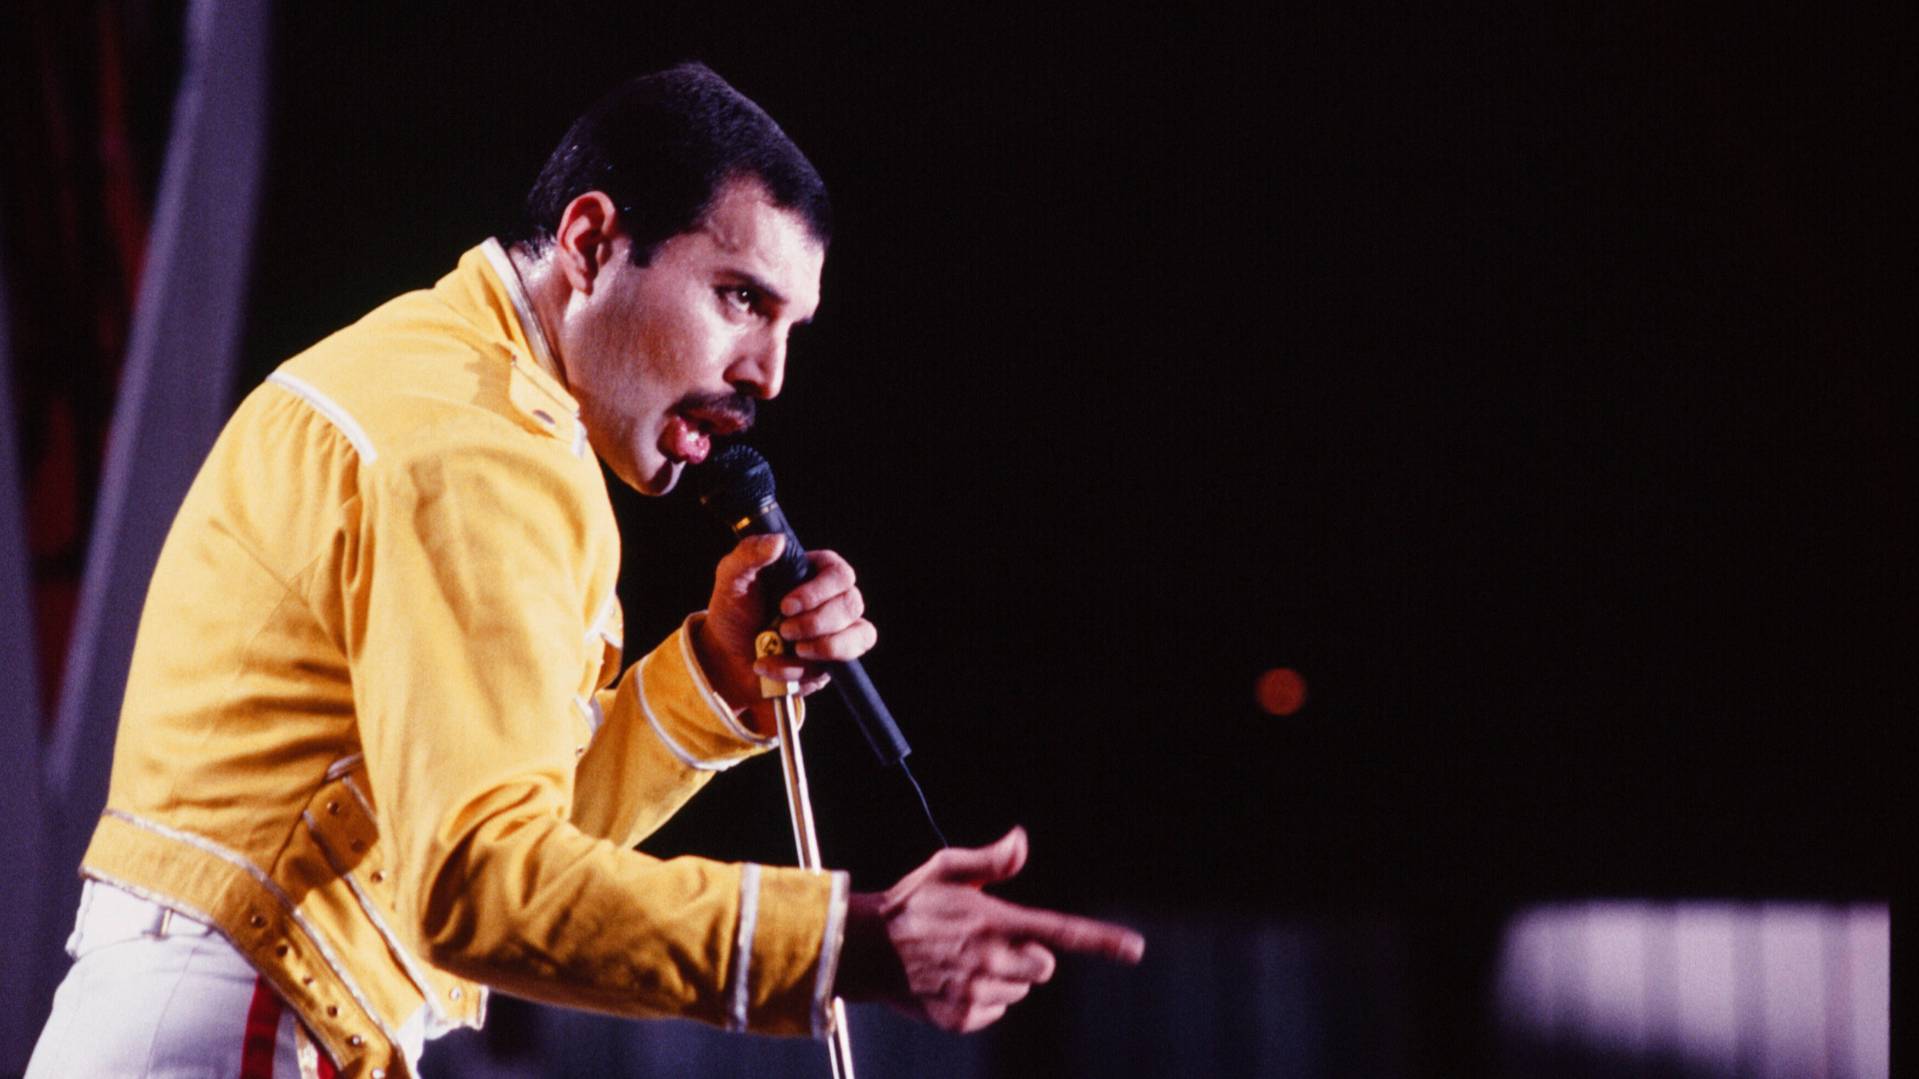 Черновик Богемской рапсодии группы Queen продали на аукционе за 1,4 млн фунтов